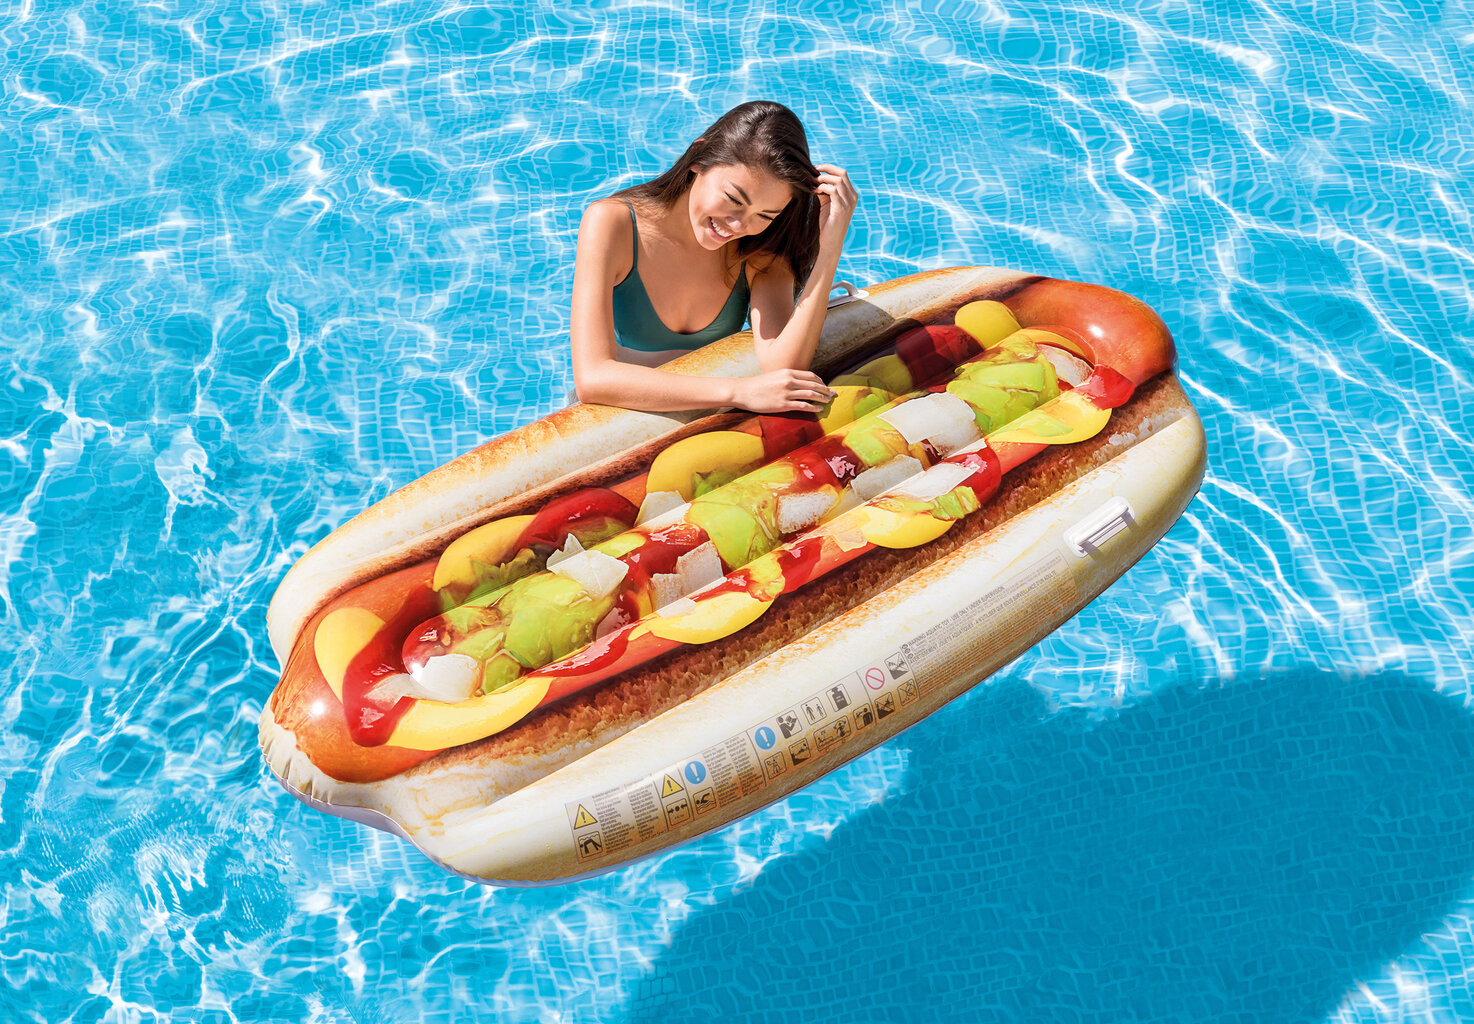 Pripučiamas gultas/plaustas Intex Hot-Dog, 180x89 cm kaina ir informacija | Pripučiamos ir paplūdimio prekės | pigu.lt